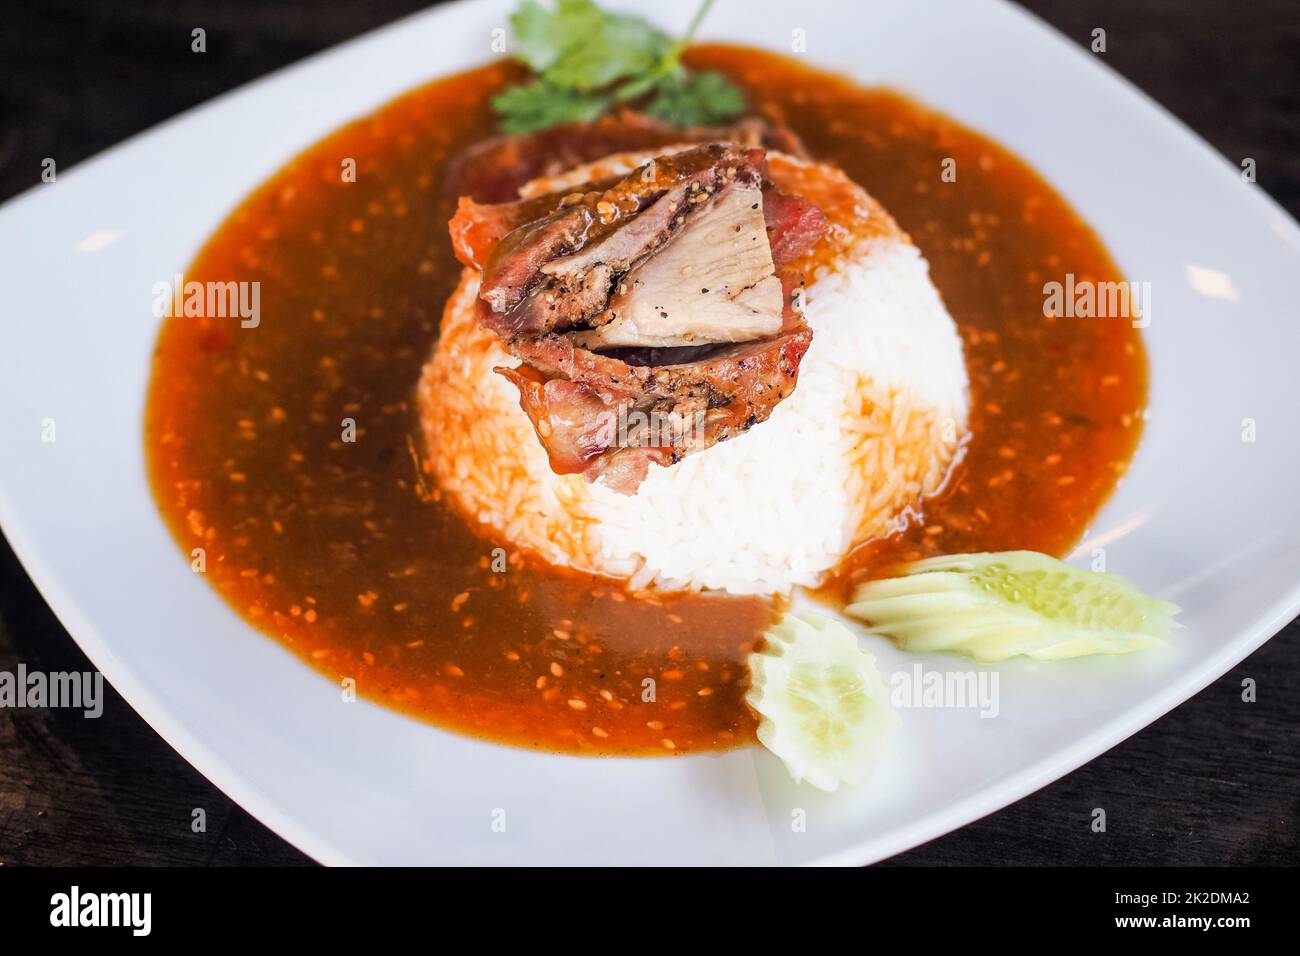 Rotes gegrilltes Schweinefleisch auf Reis, Speisen mit süßem Curry und Gemüse (Gurke, Koriander) auf weißer Keramikplatte servieren. Stockfoto